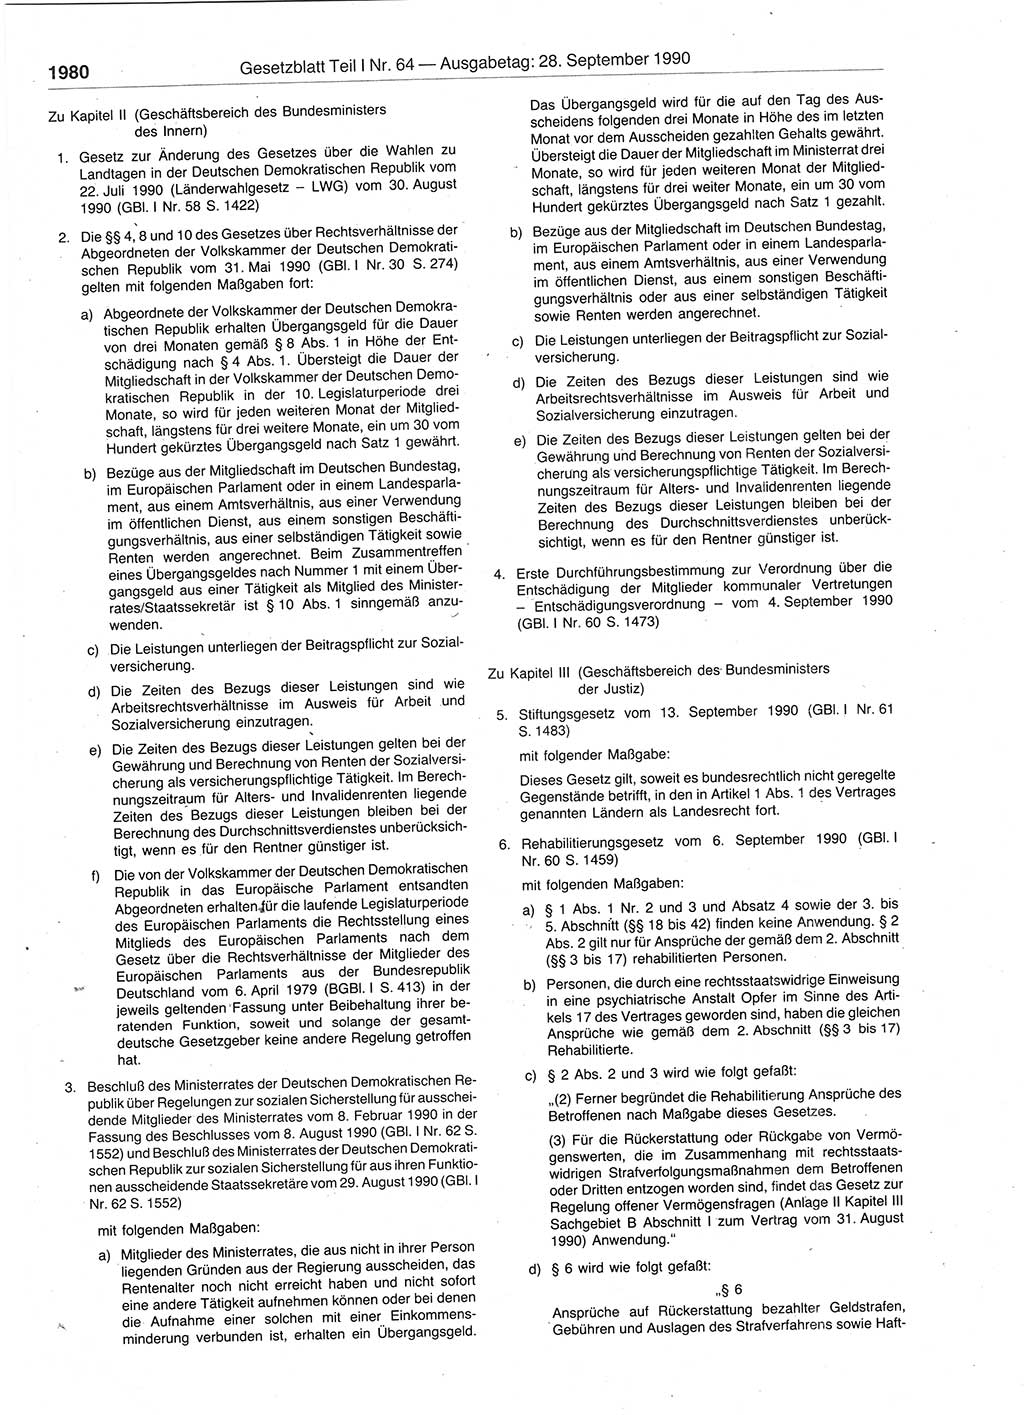 Gesetzblatt (GBl.) der Deutschen Demokratischen Republik (DDR) Teil Ⅰ 1990, Seite 1980 (GBl. DDR Ⅰ 1990, S. 1980)